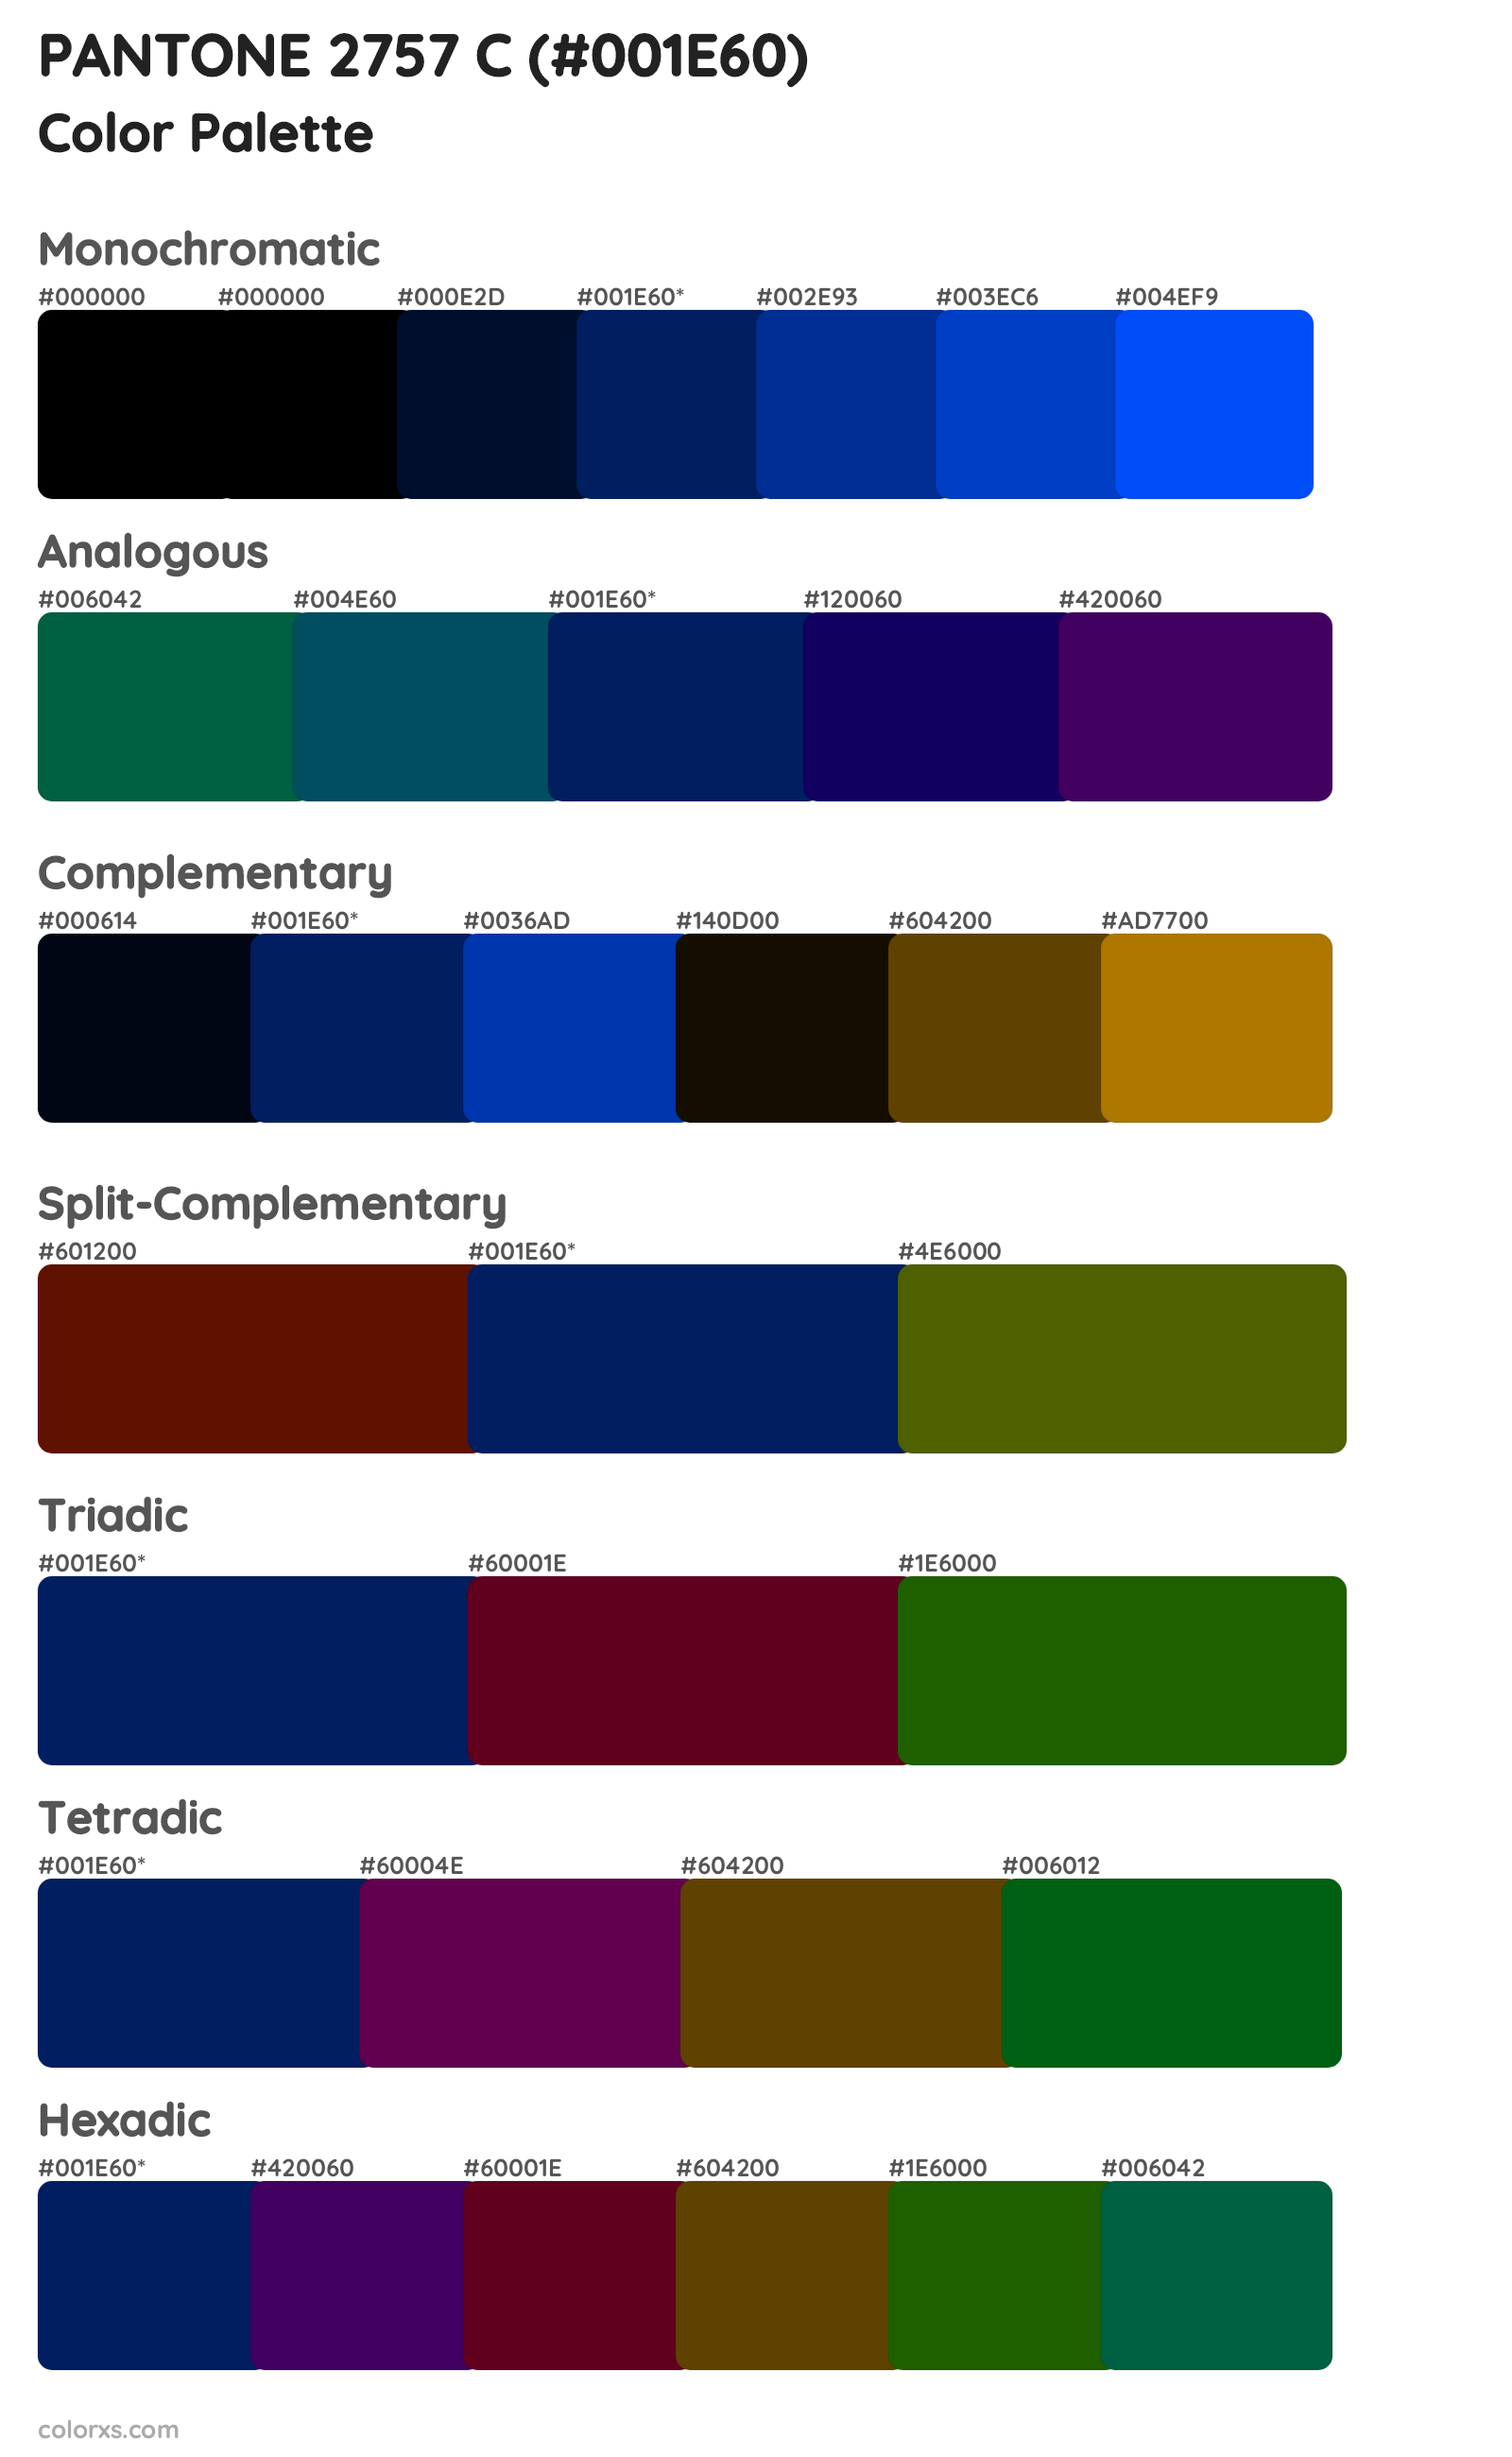 PANTONE 2757 C Color Scheme Palettes